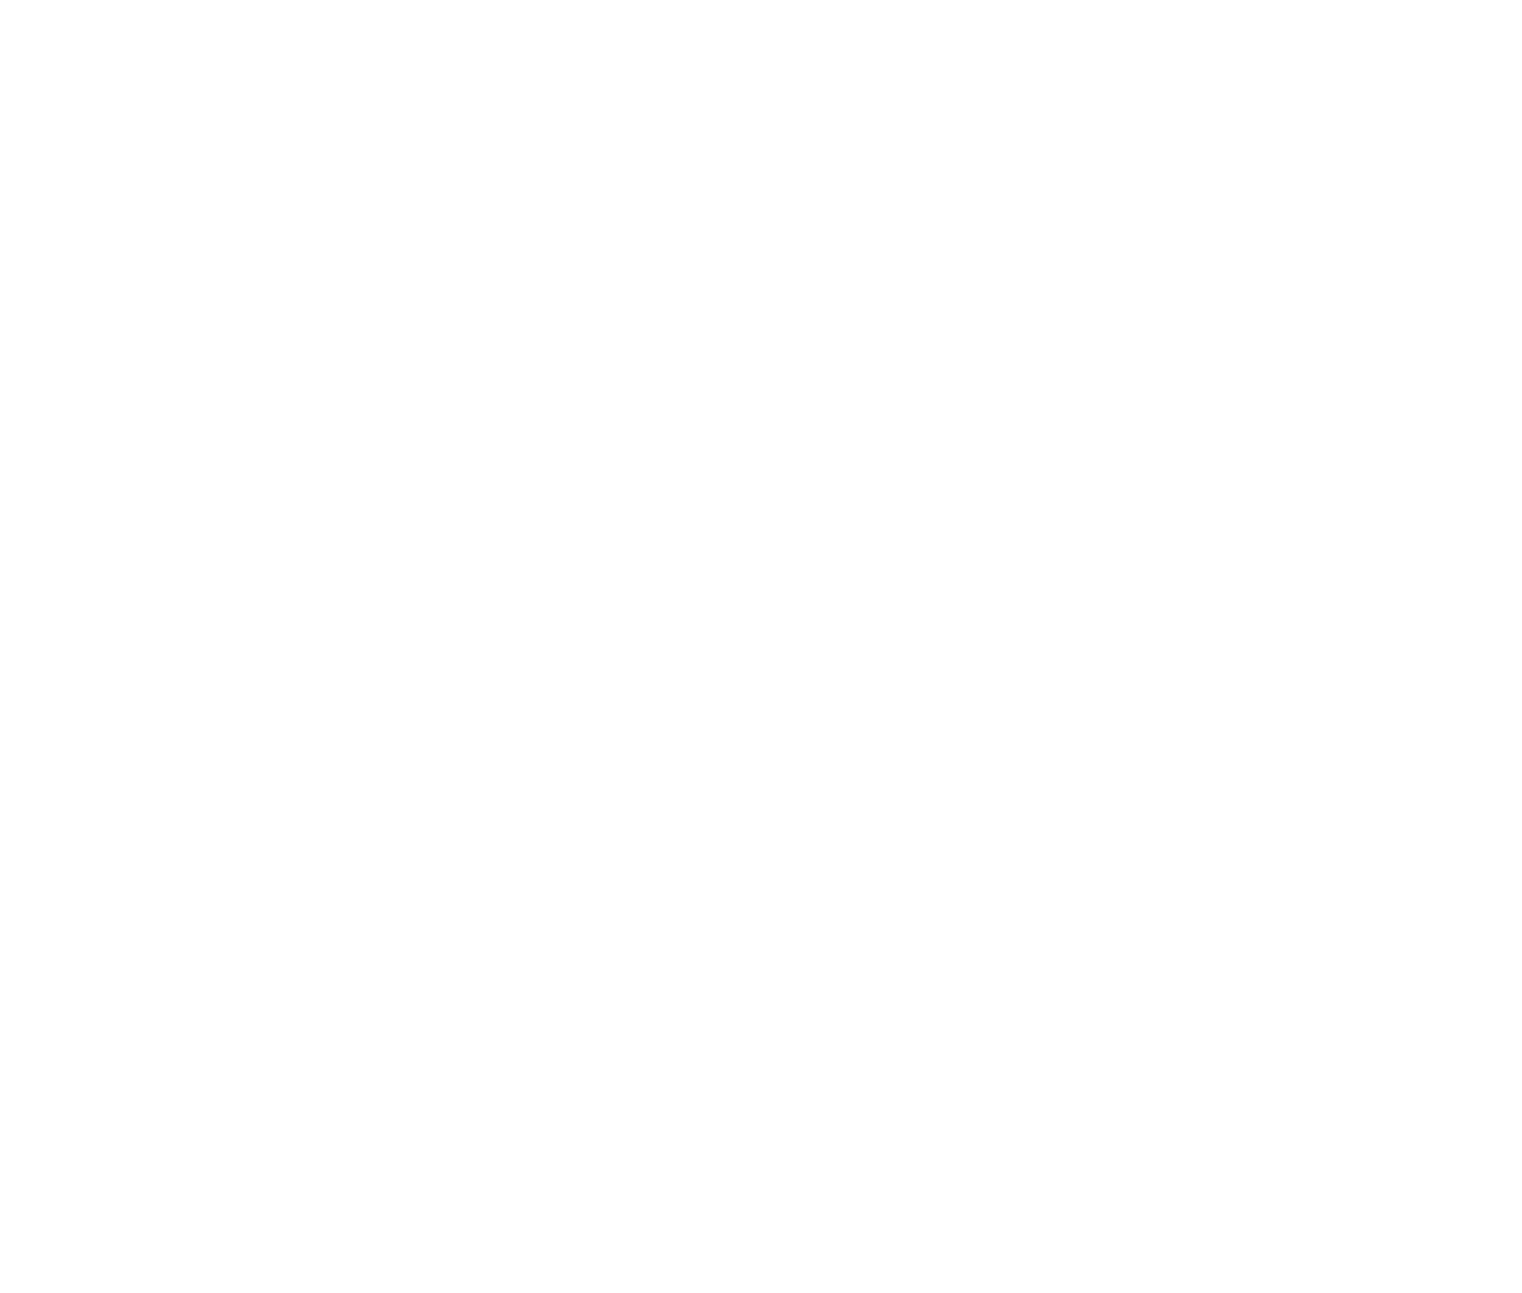 MasTec logo for dark backgrounds (transparent PNG)